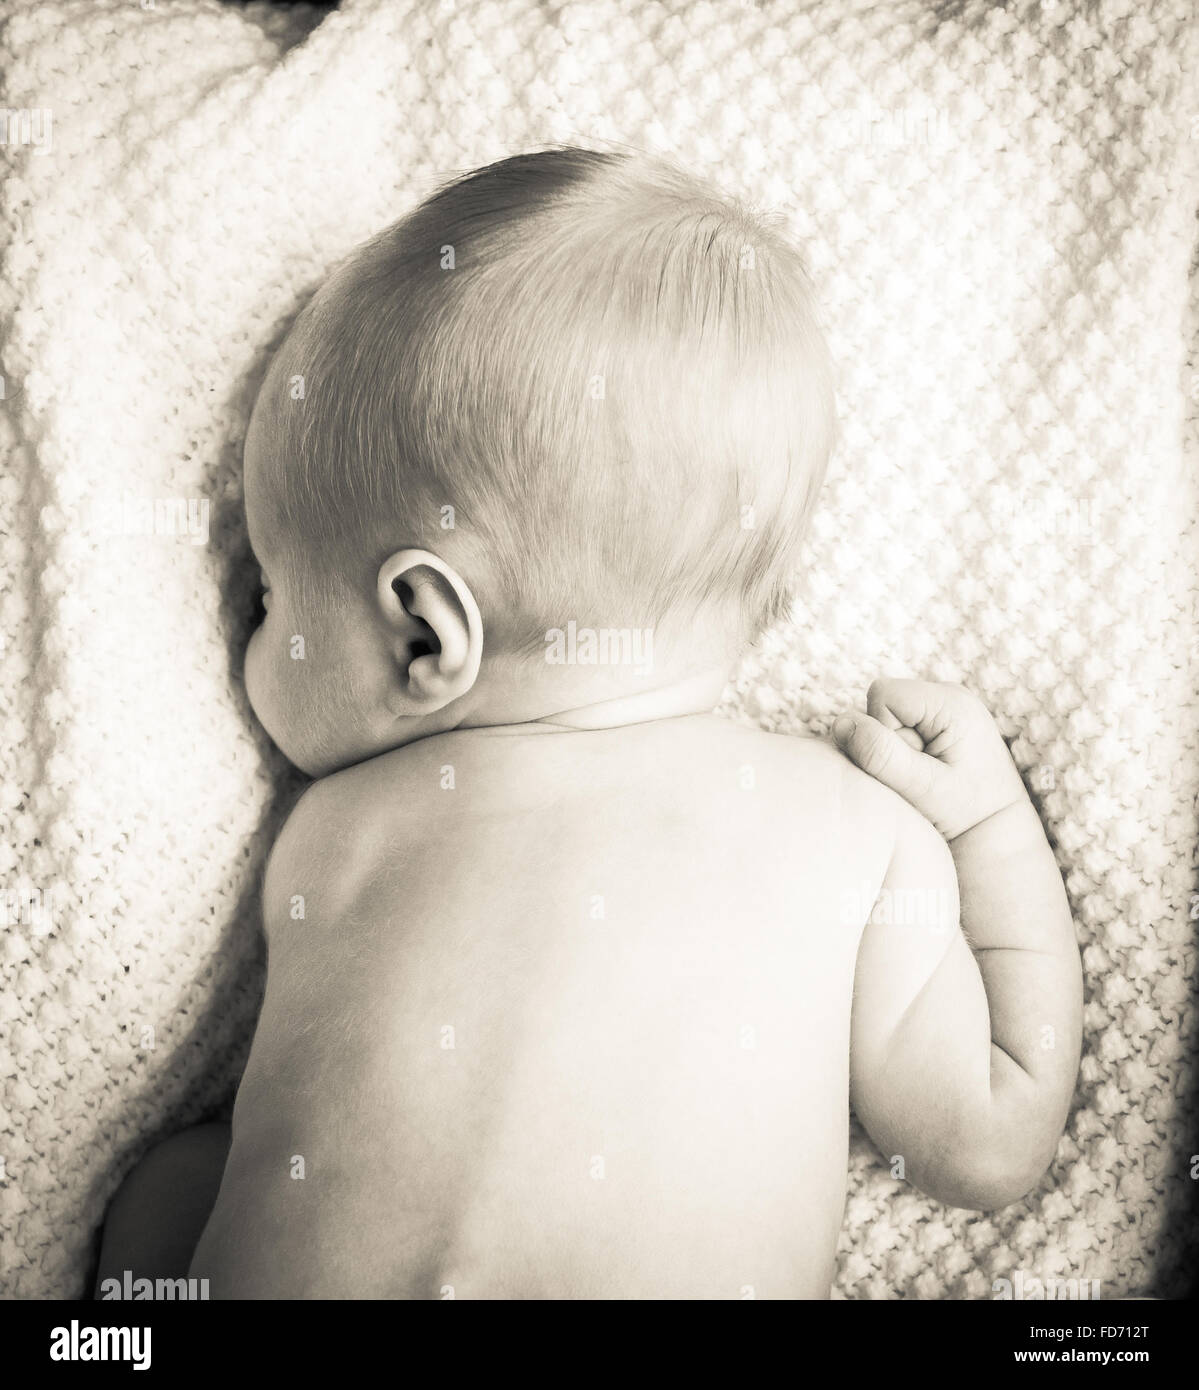 Neugeborene schlafen in einem weißen Tuch mit seinem Gesicht versteckt Stockfoto